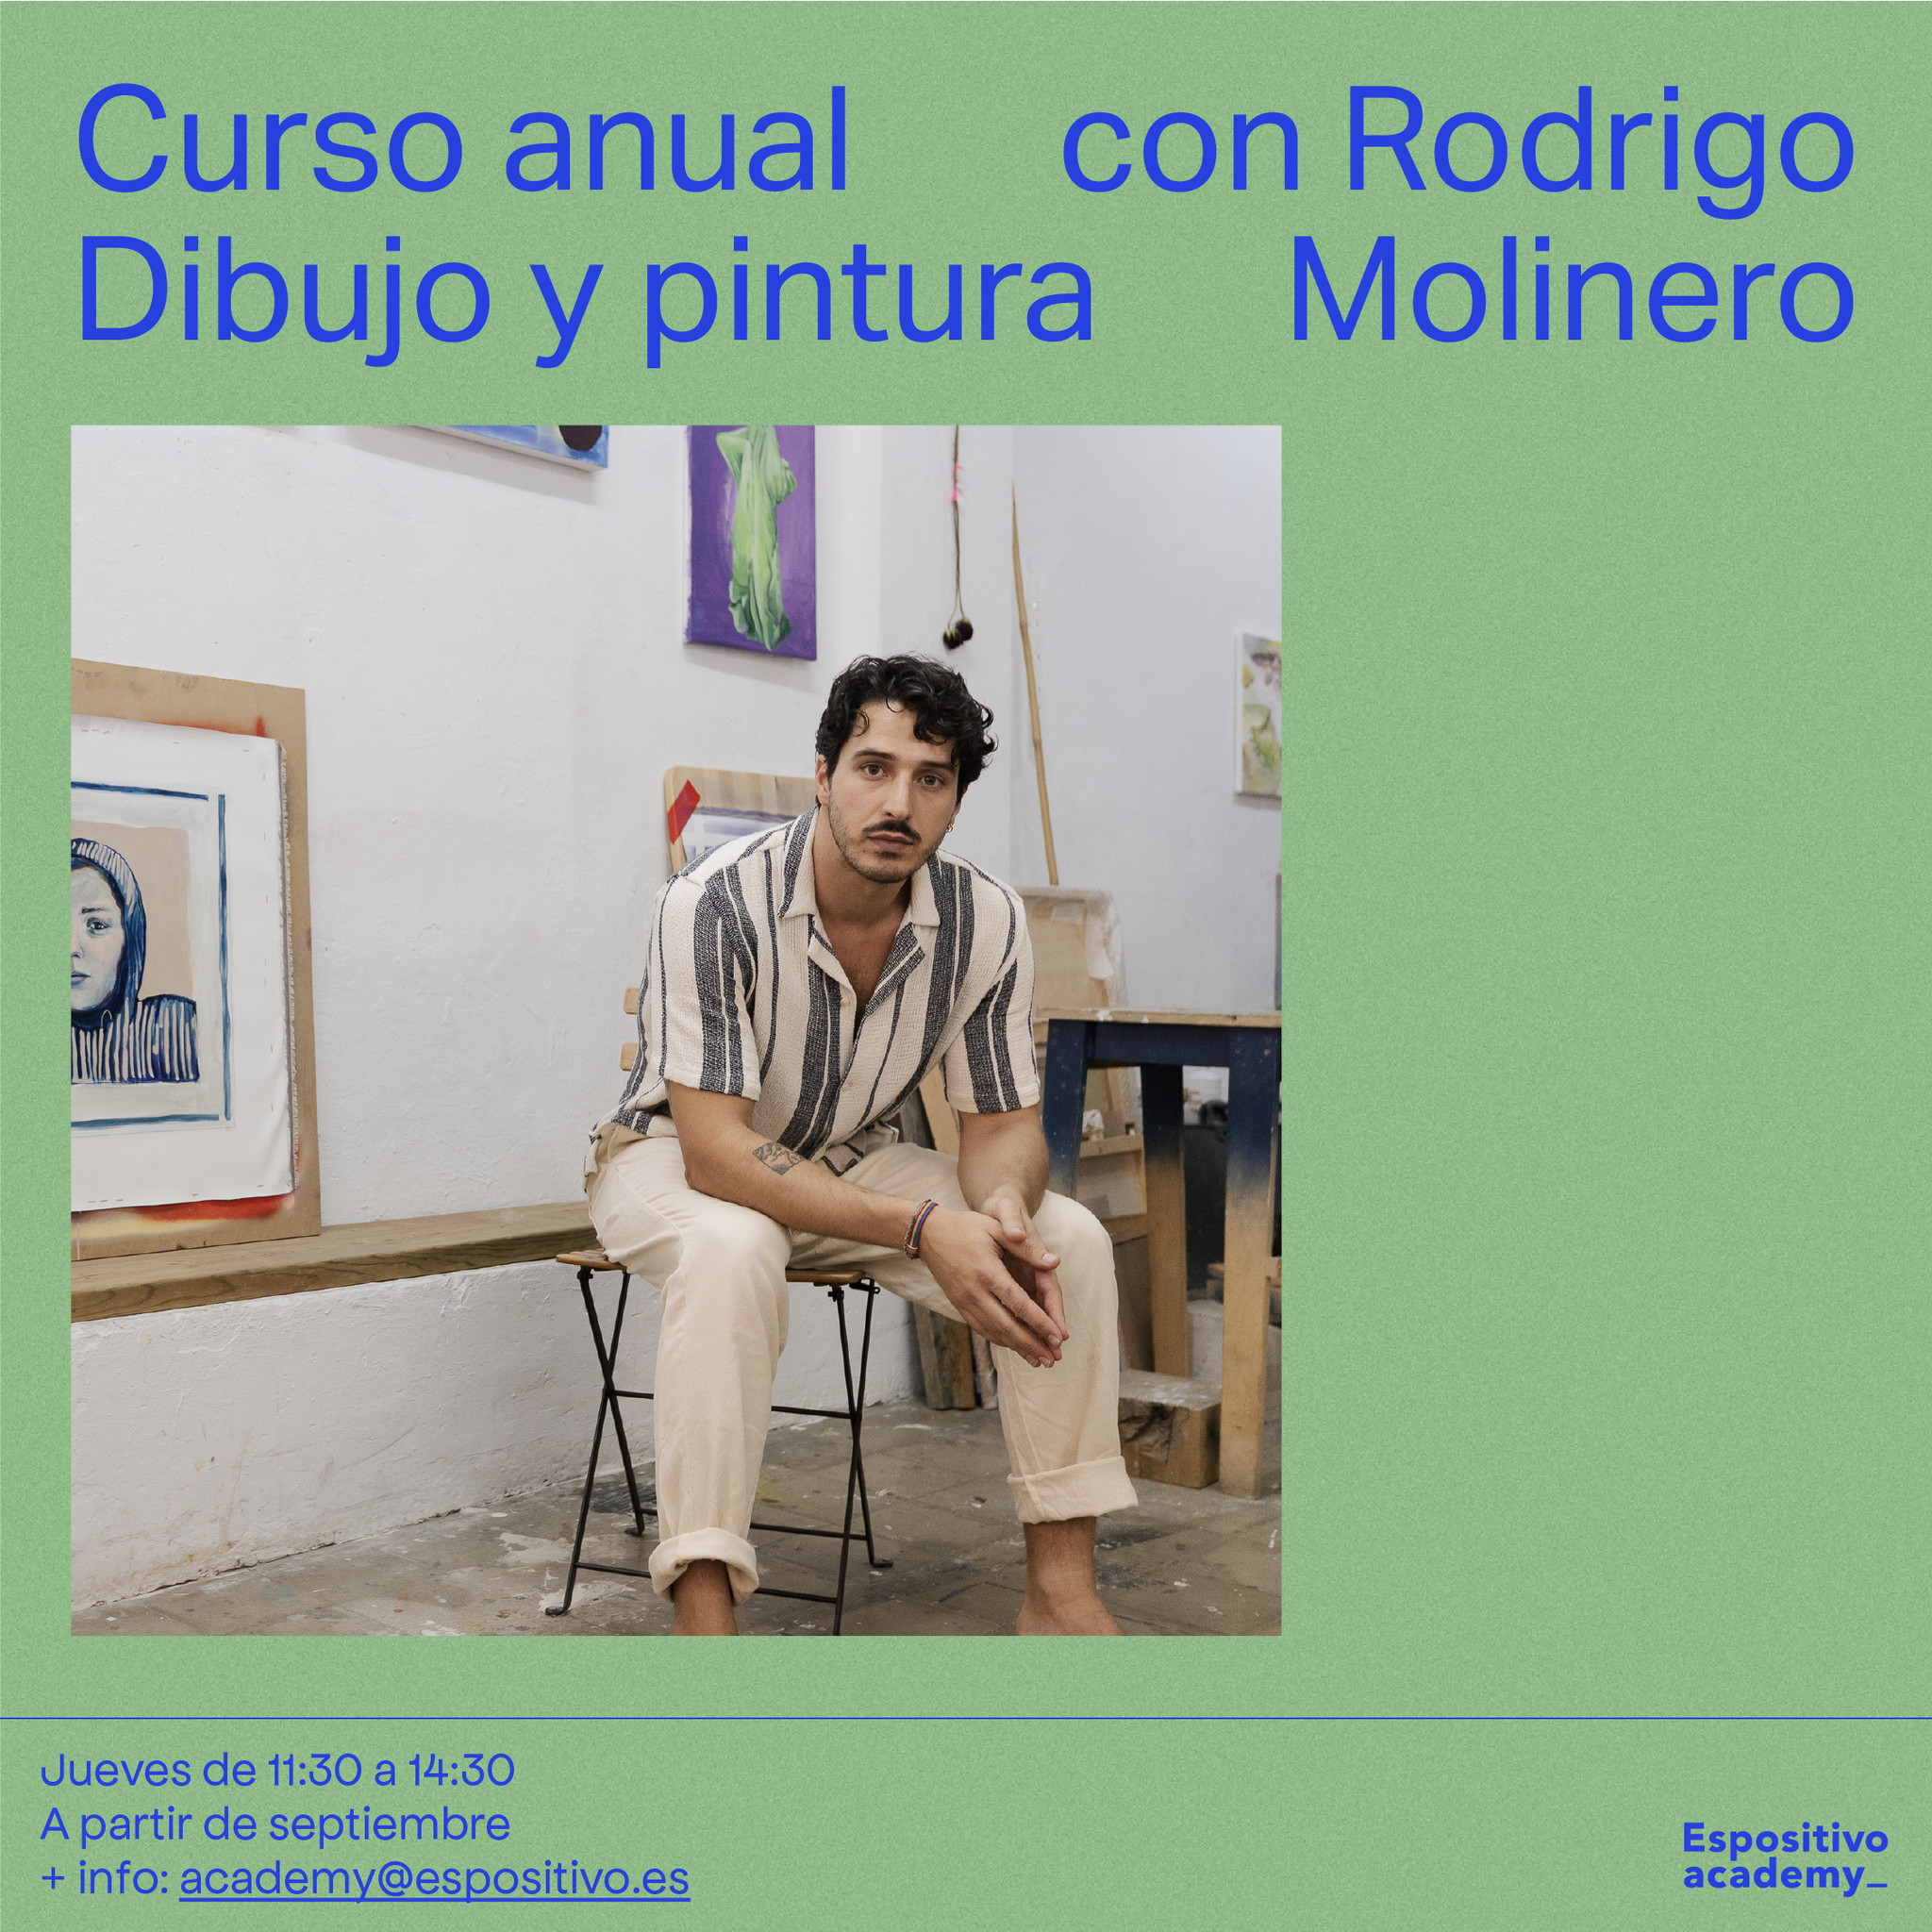 Dibujo y pintura para adultxs con Rodrigo Molinero.<br>Jueves o viernes de 11:30 a 14:30h